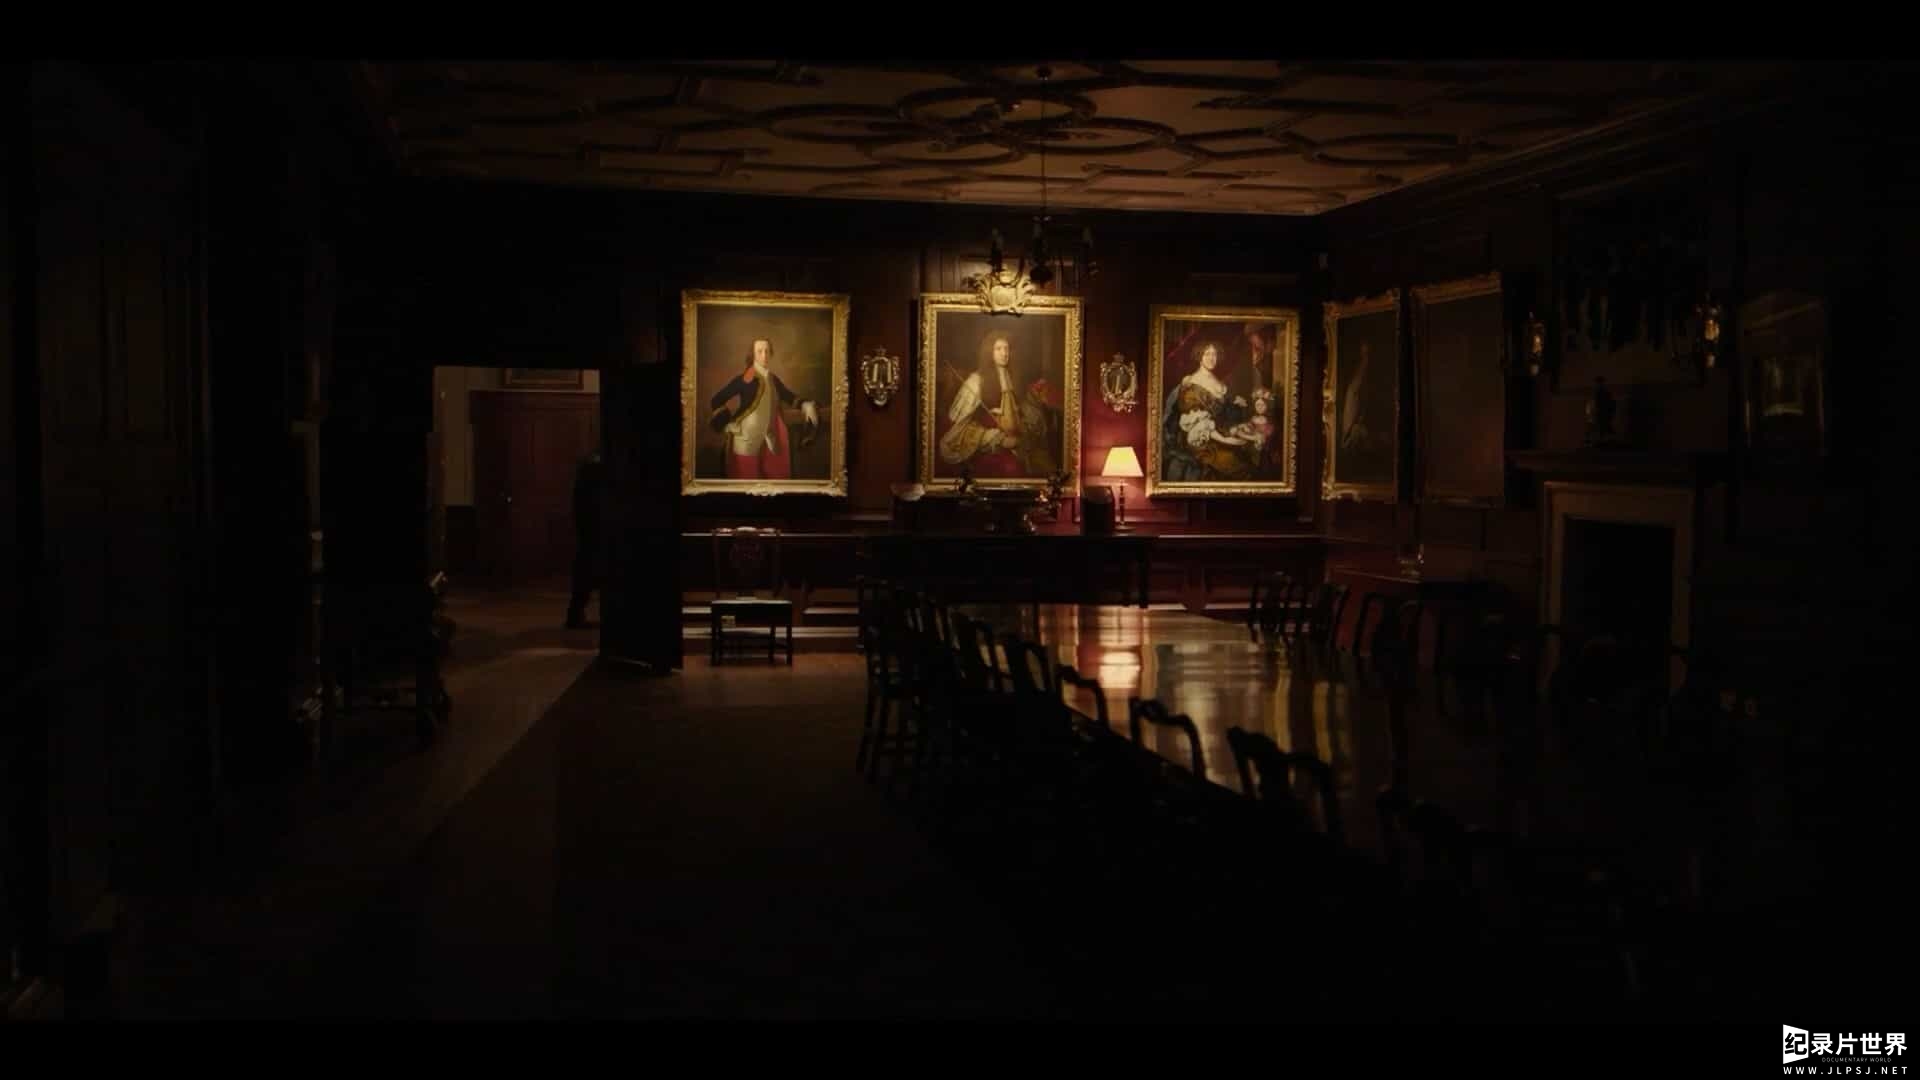  荷兰纪录片《我的伦勃朗 Mijn Rembrandt 2019》全1集